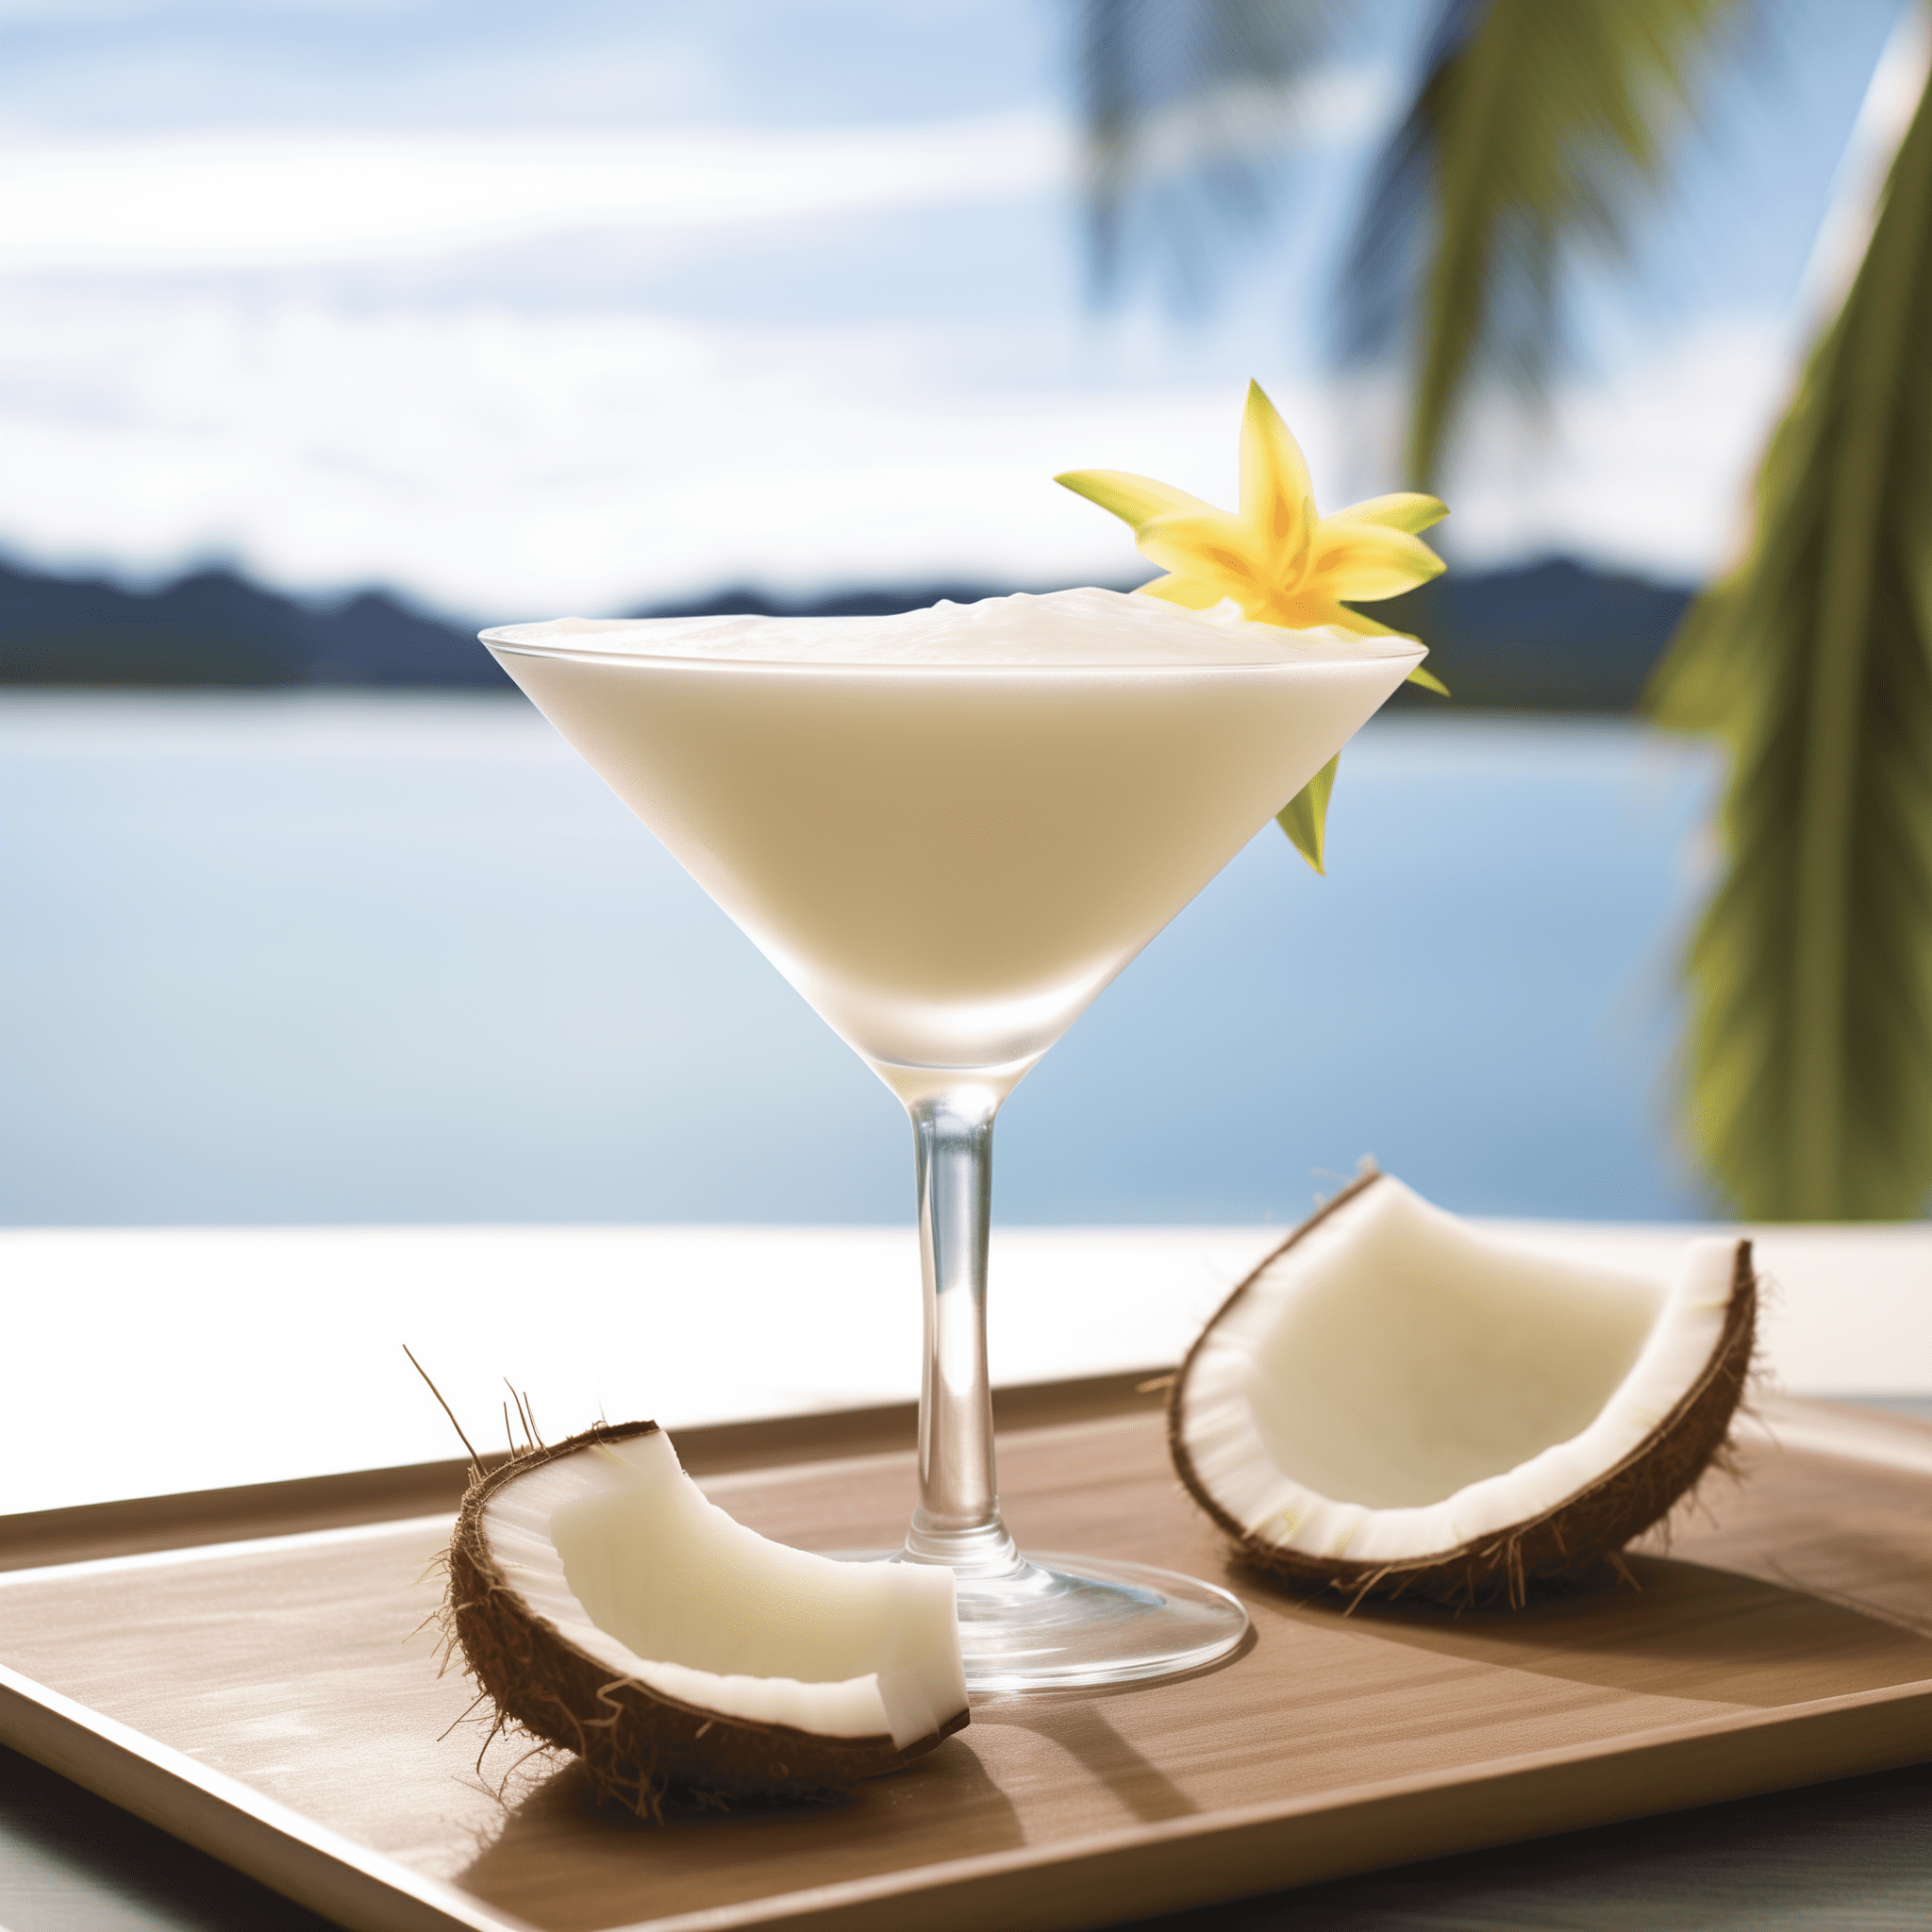 Coconut Cloud Martini Cóctel Receta - El Coconut Cloud Martini es una sinfonía de sabores dulces y cremosos con un toque de vainilla y un suave final de coco. Es rico sin ser abrumador y tiene una sensación en boca lujosa que baila en el paladar.